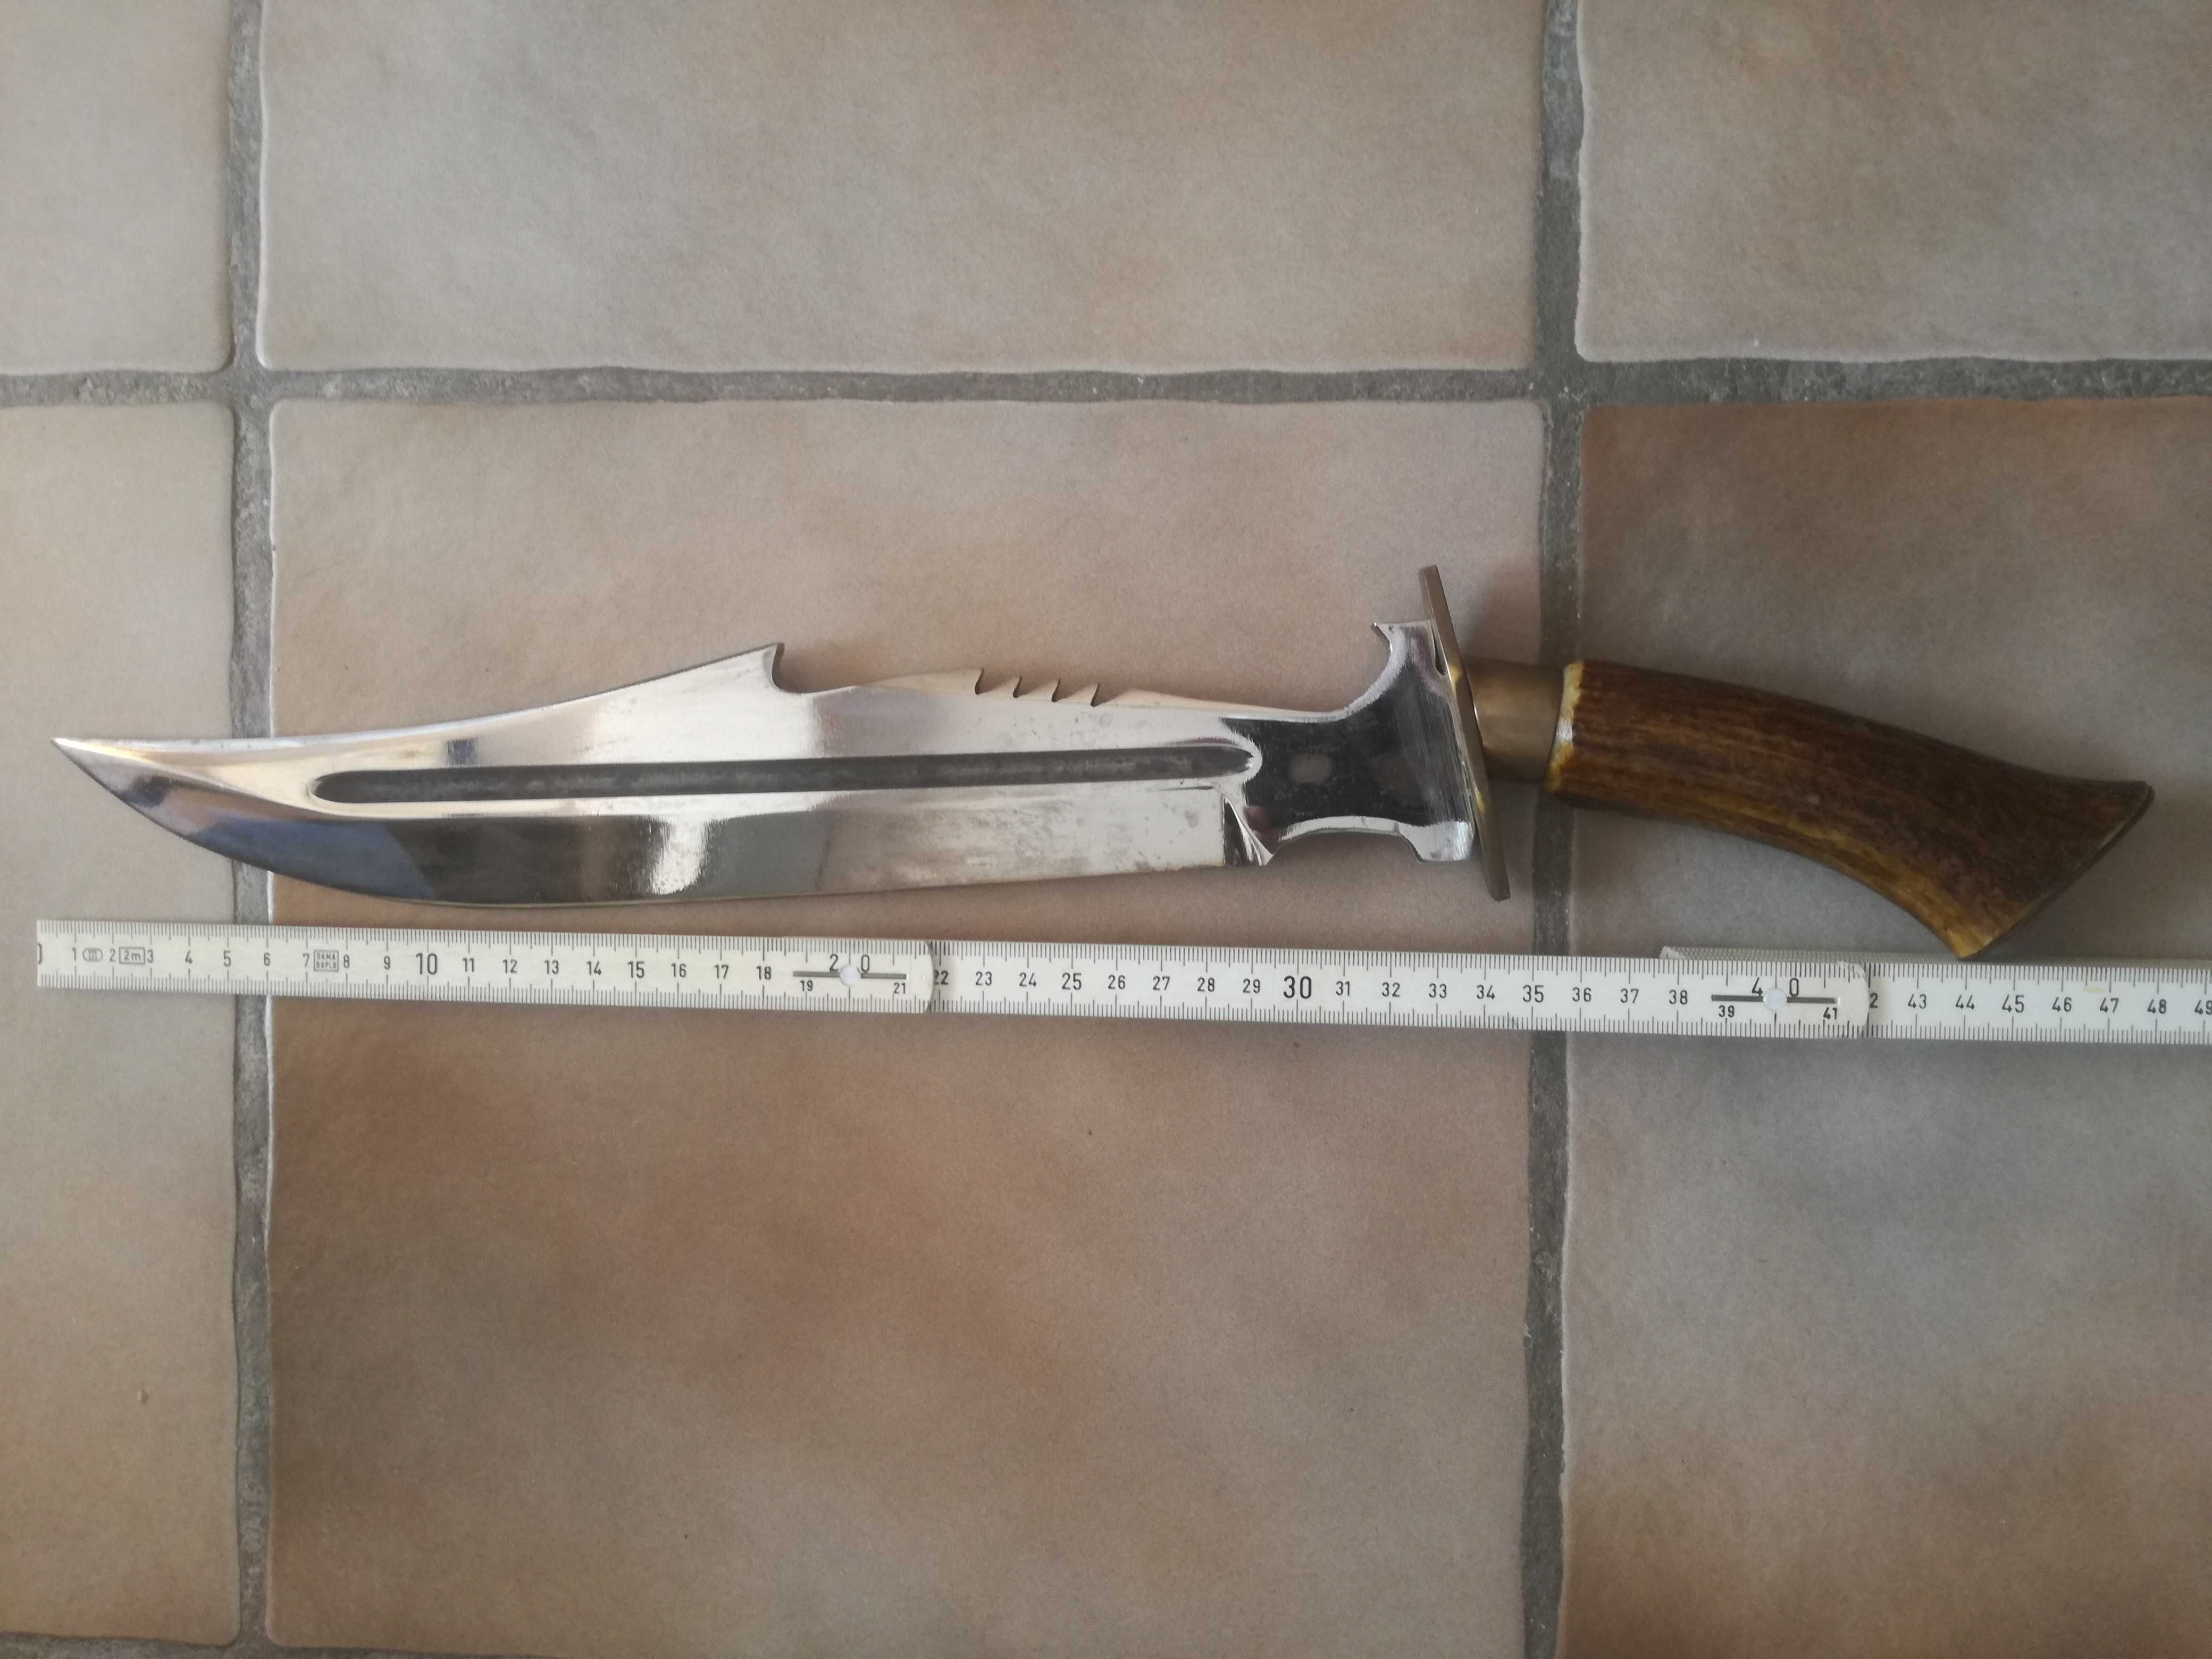 Кован ловен нож от ресорна стомана Рамбо с еленова дръжка.